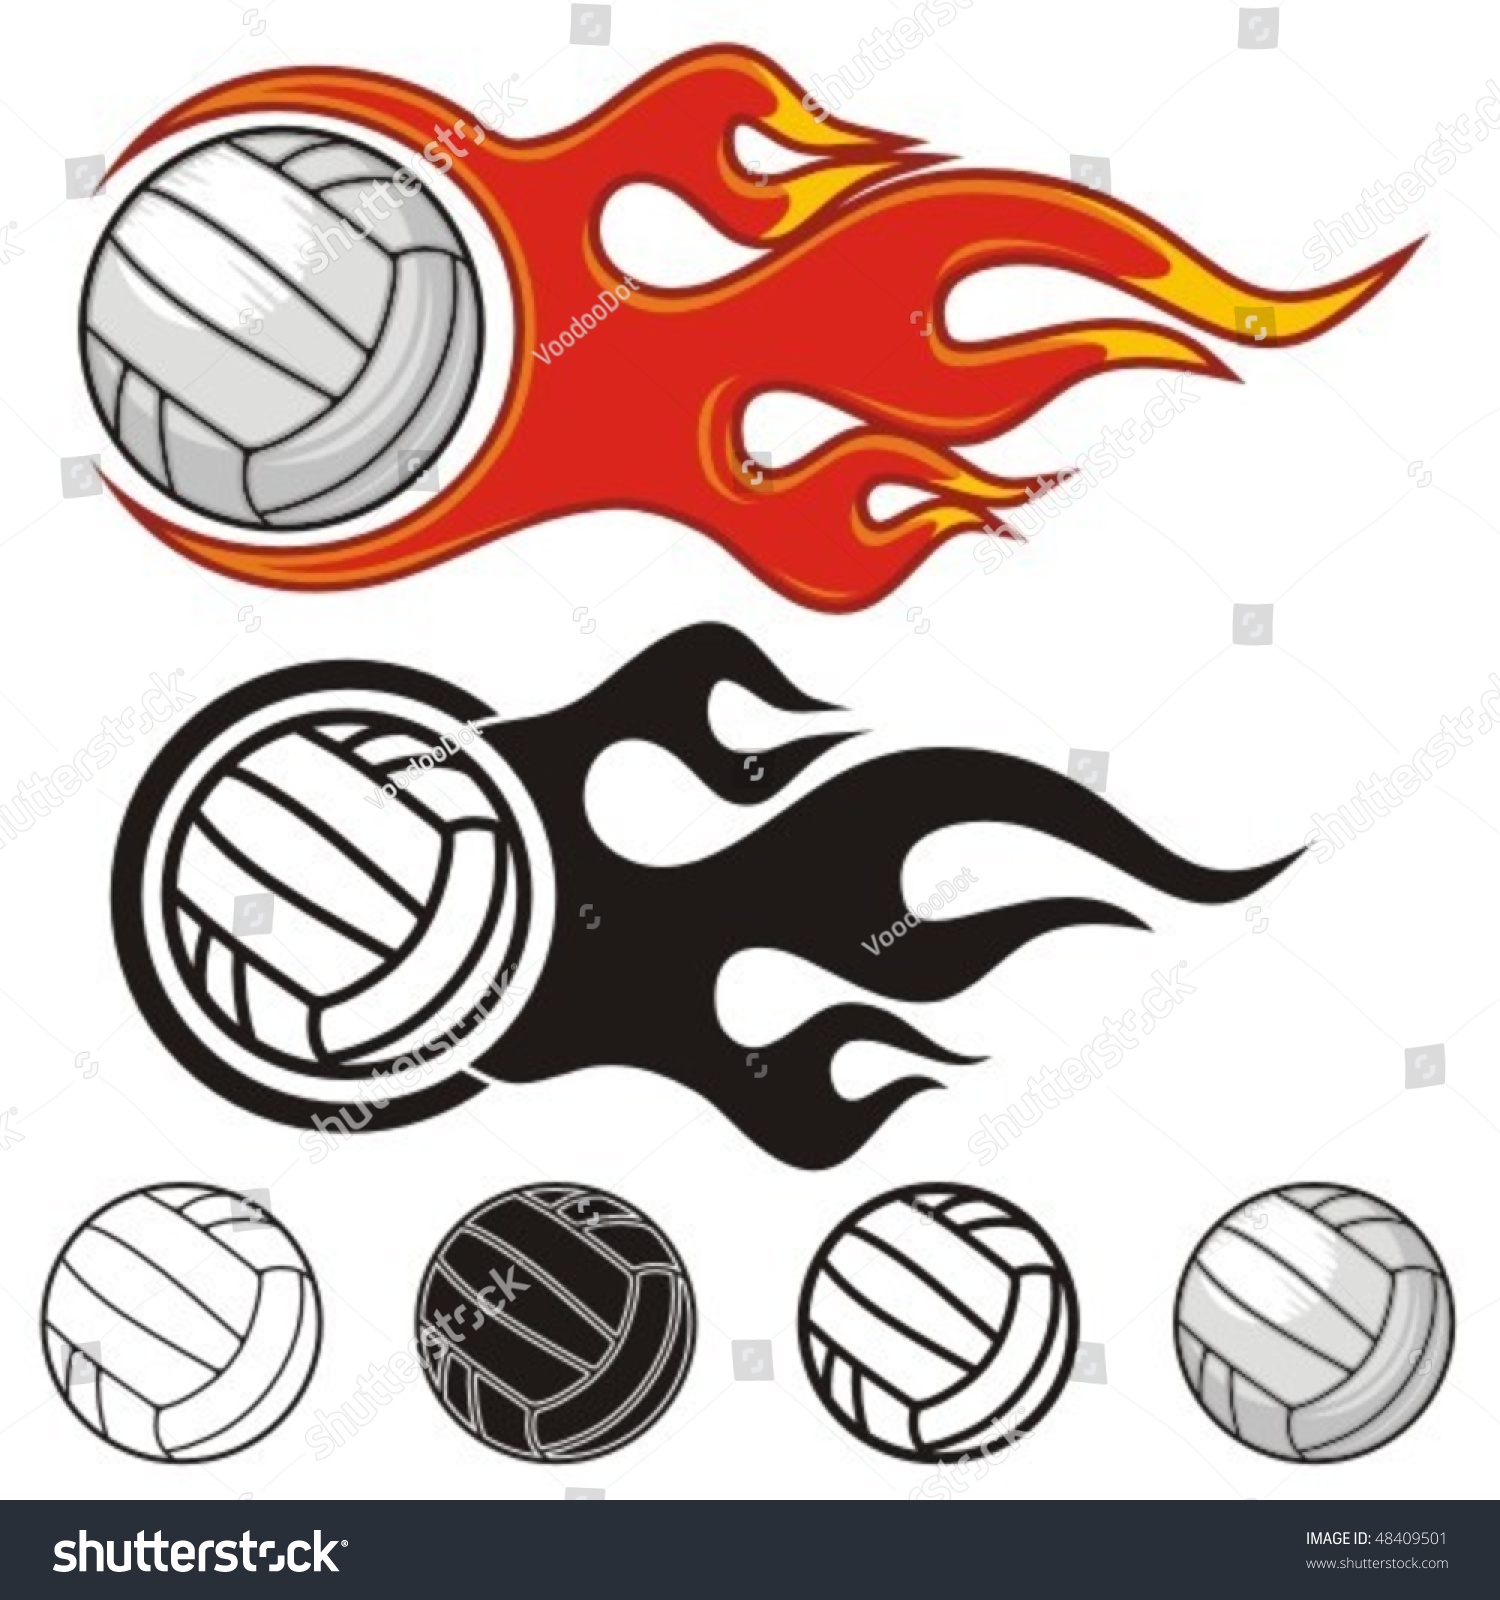 Flaming Volleyball Ball. Vector Illustration. - 48409501 : Shutterstock